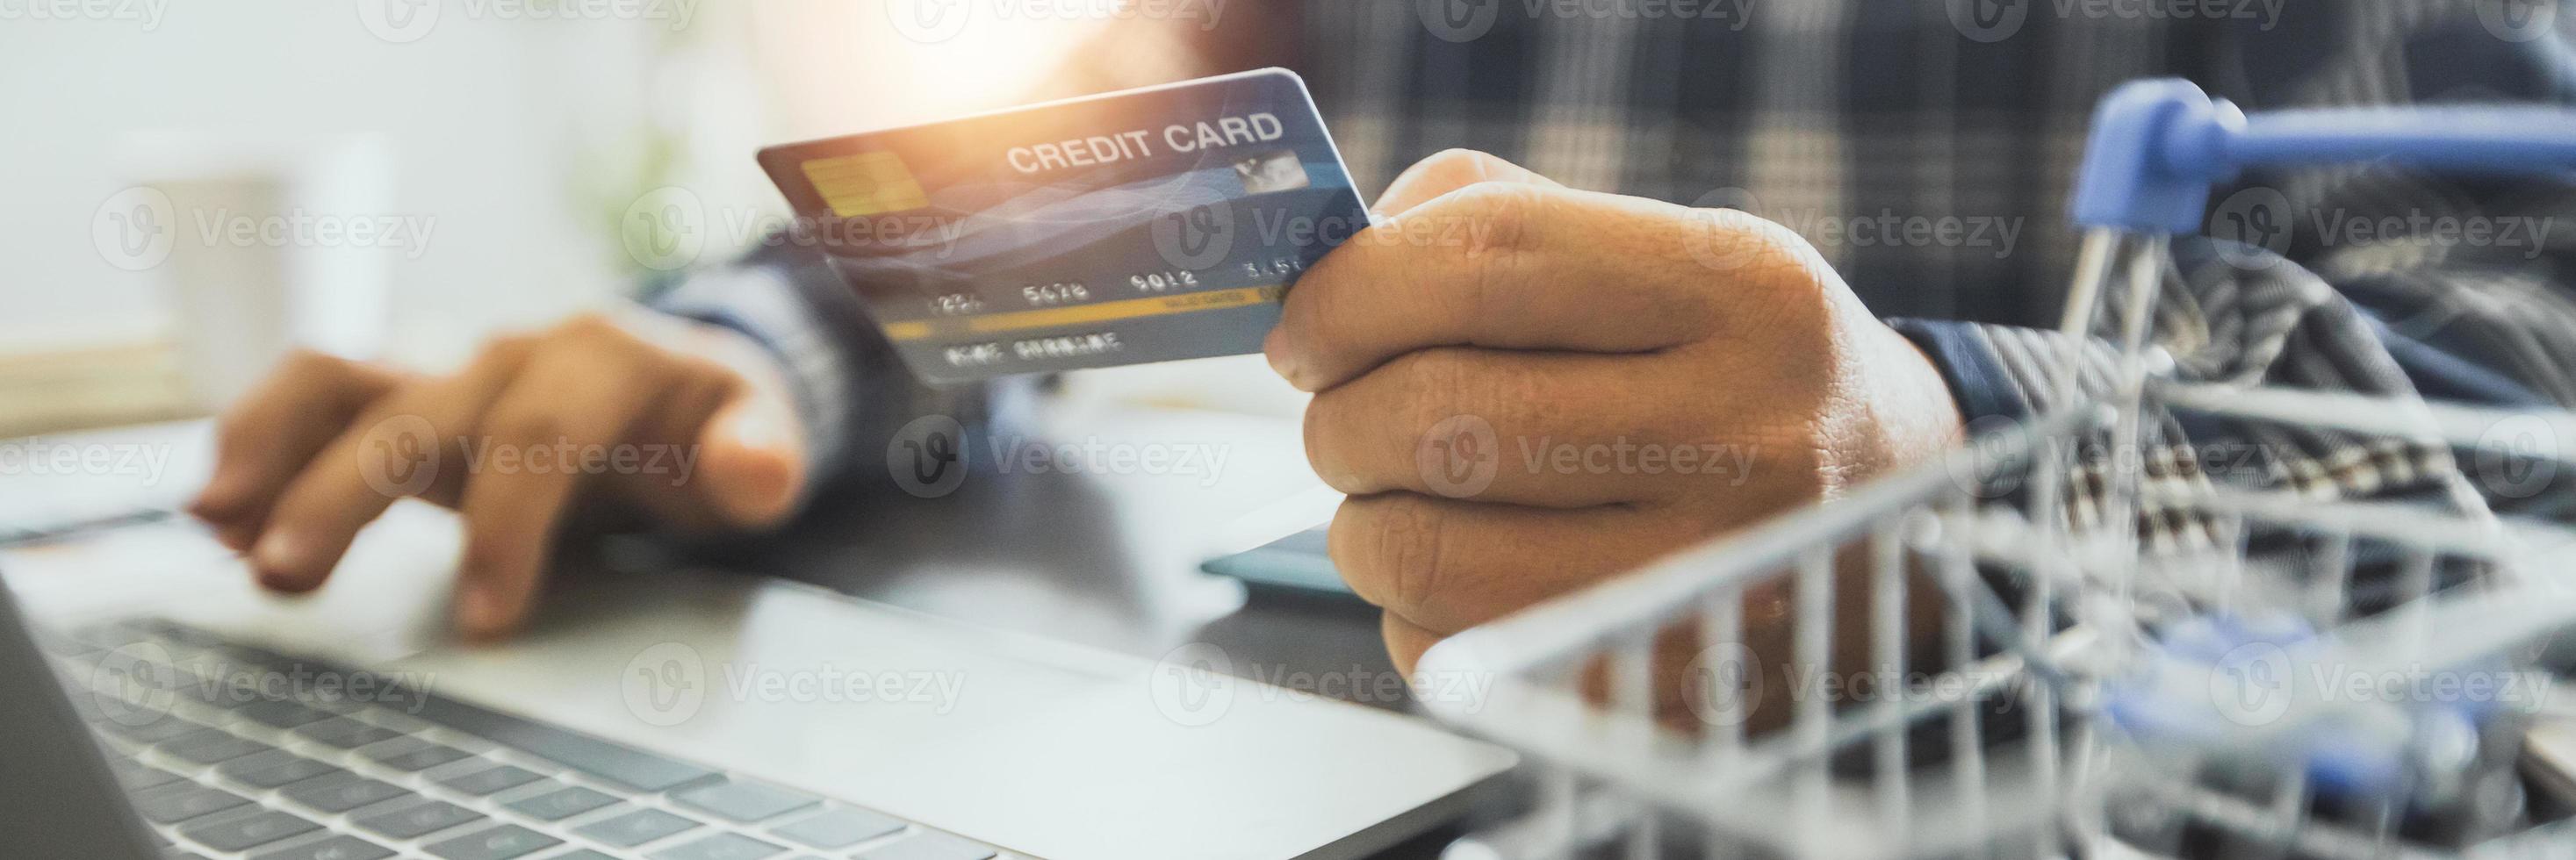 Hombre sujetando una tarjeta de crédito y trabajando en una computadora portátil foto